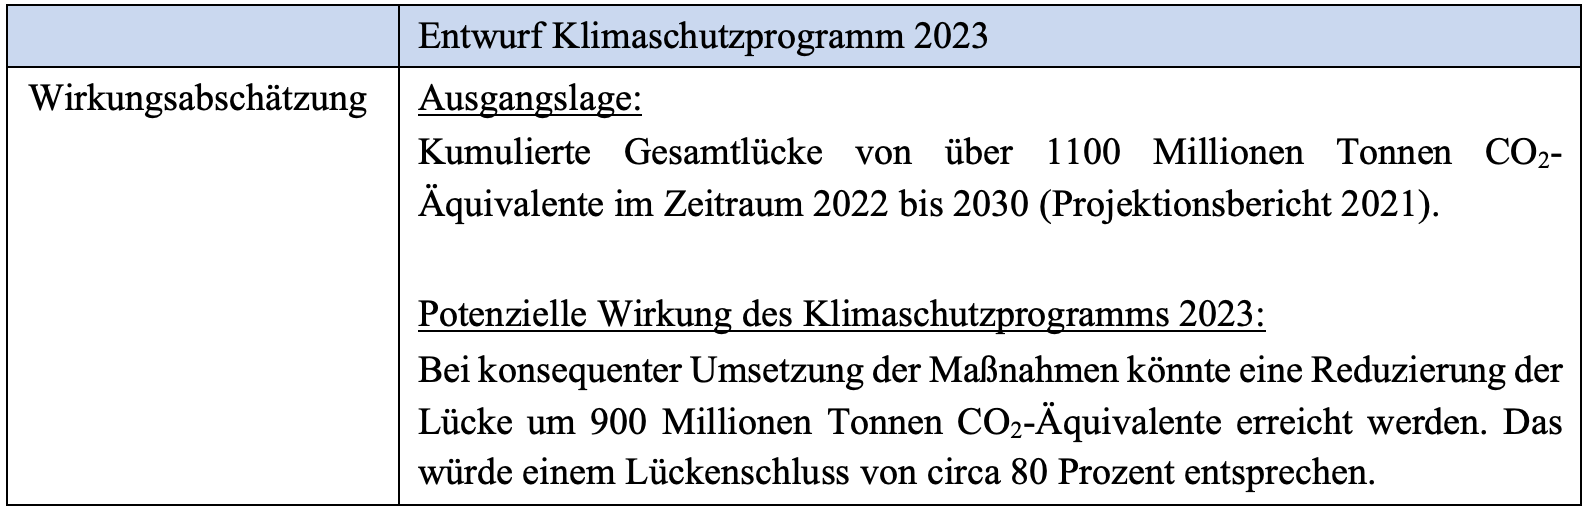 Wirkungsabschaetzung des geplanten Klimaschutzprogramms 2023 .png